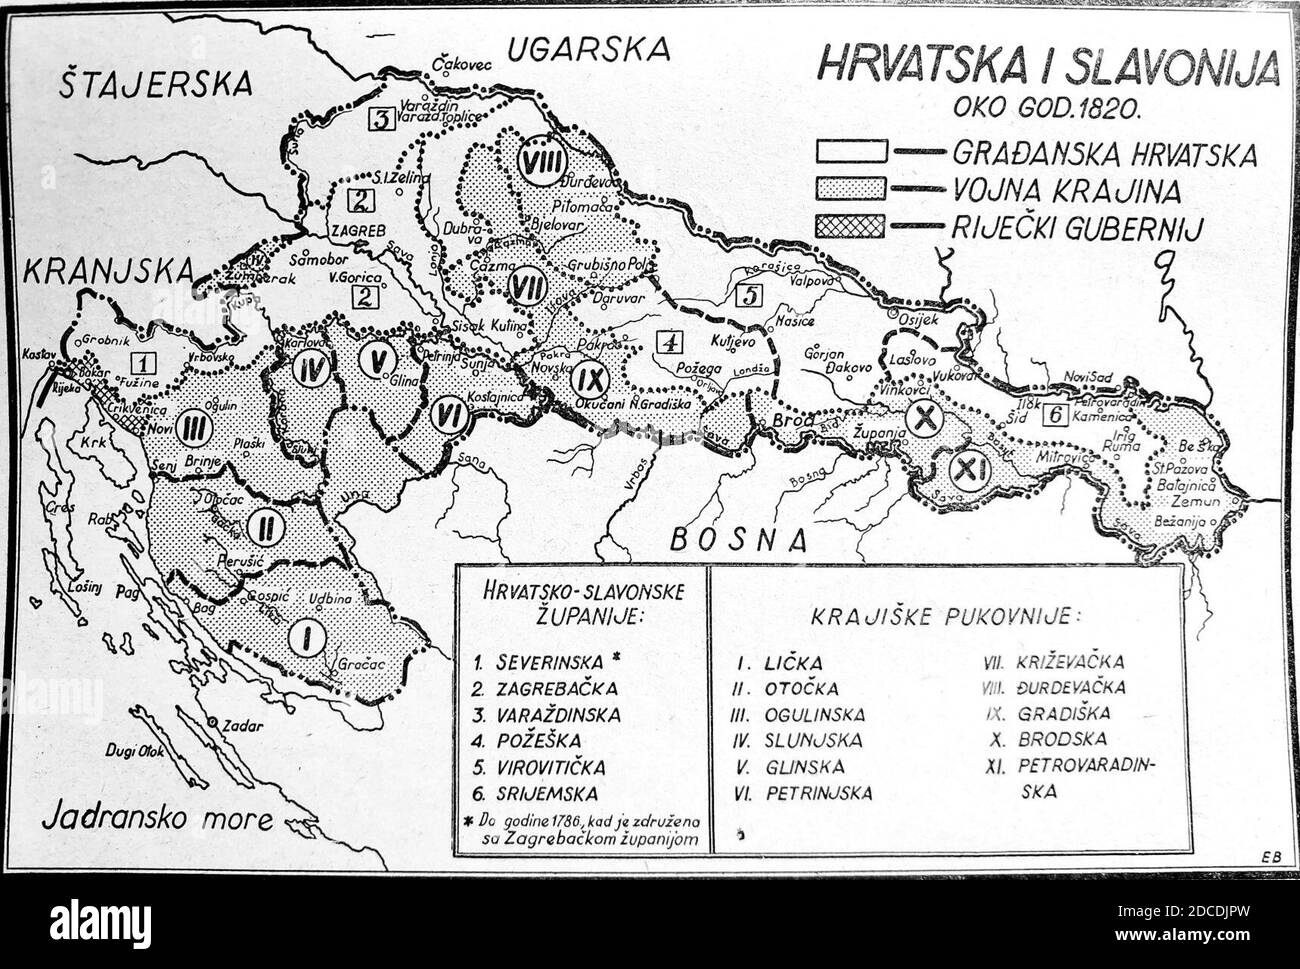 Karta Hrvatska i Slavonija oko 1820. (građanska Hrvatska, Vojna